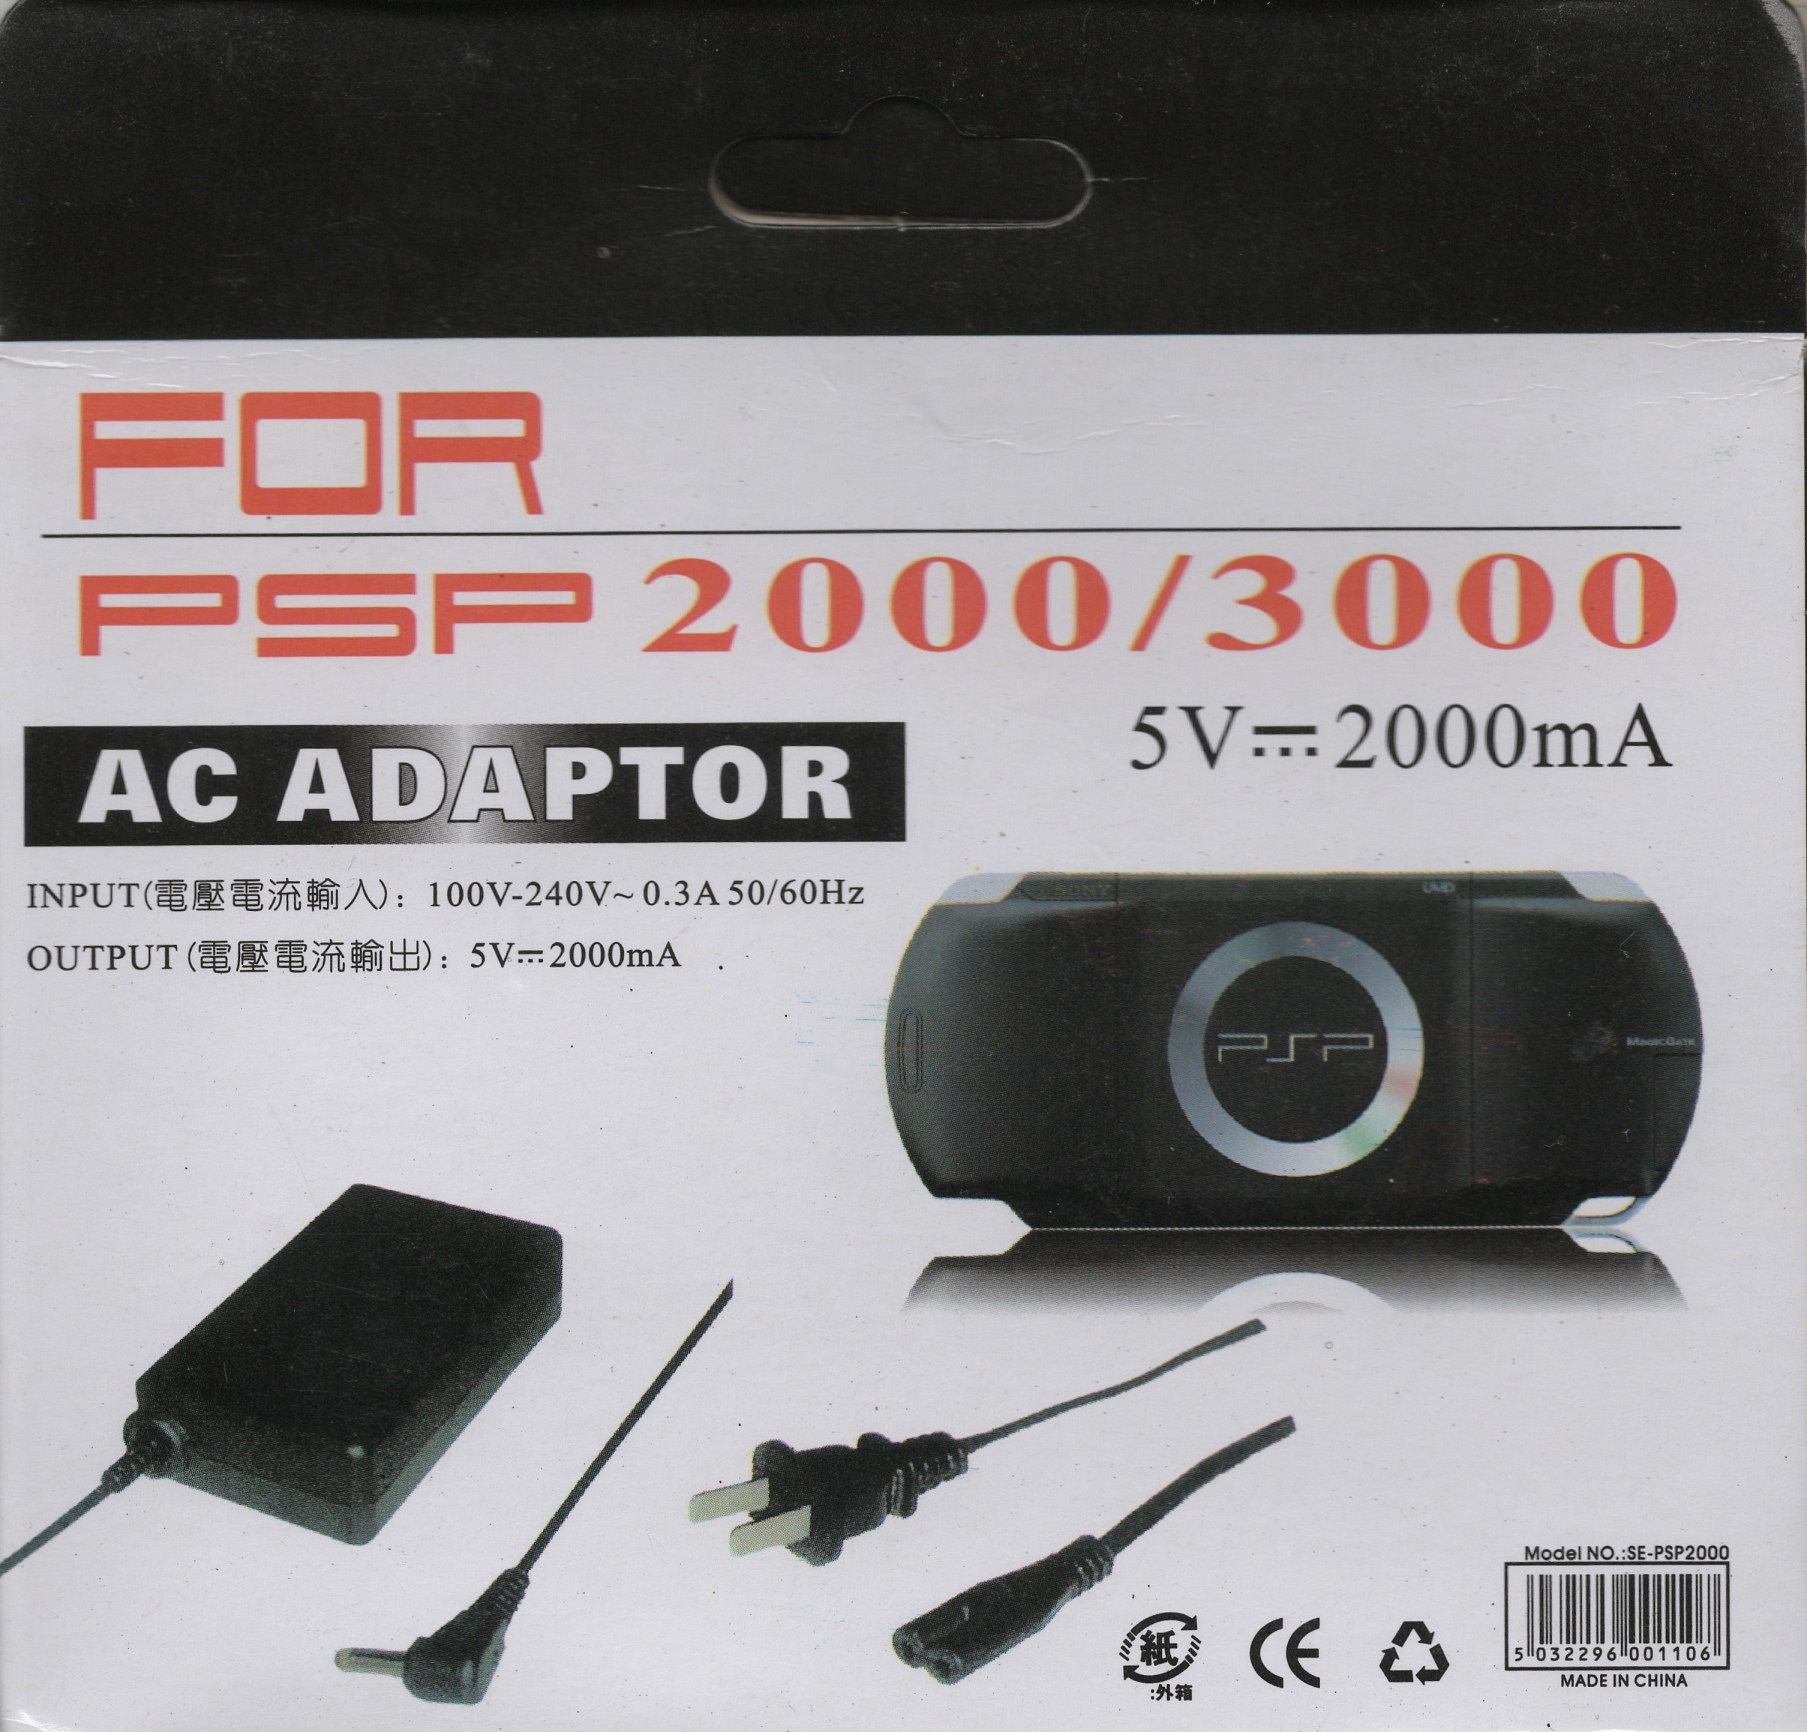 Hálózati adapter és töltő PSP 2000/3000-res gépekhez - PSP Kiegészítők